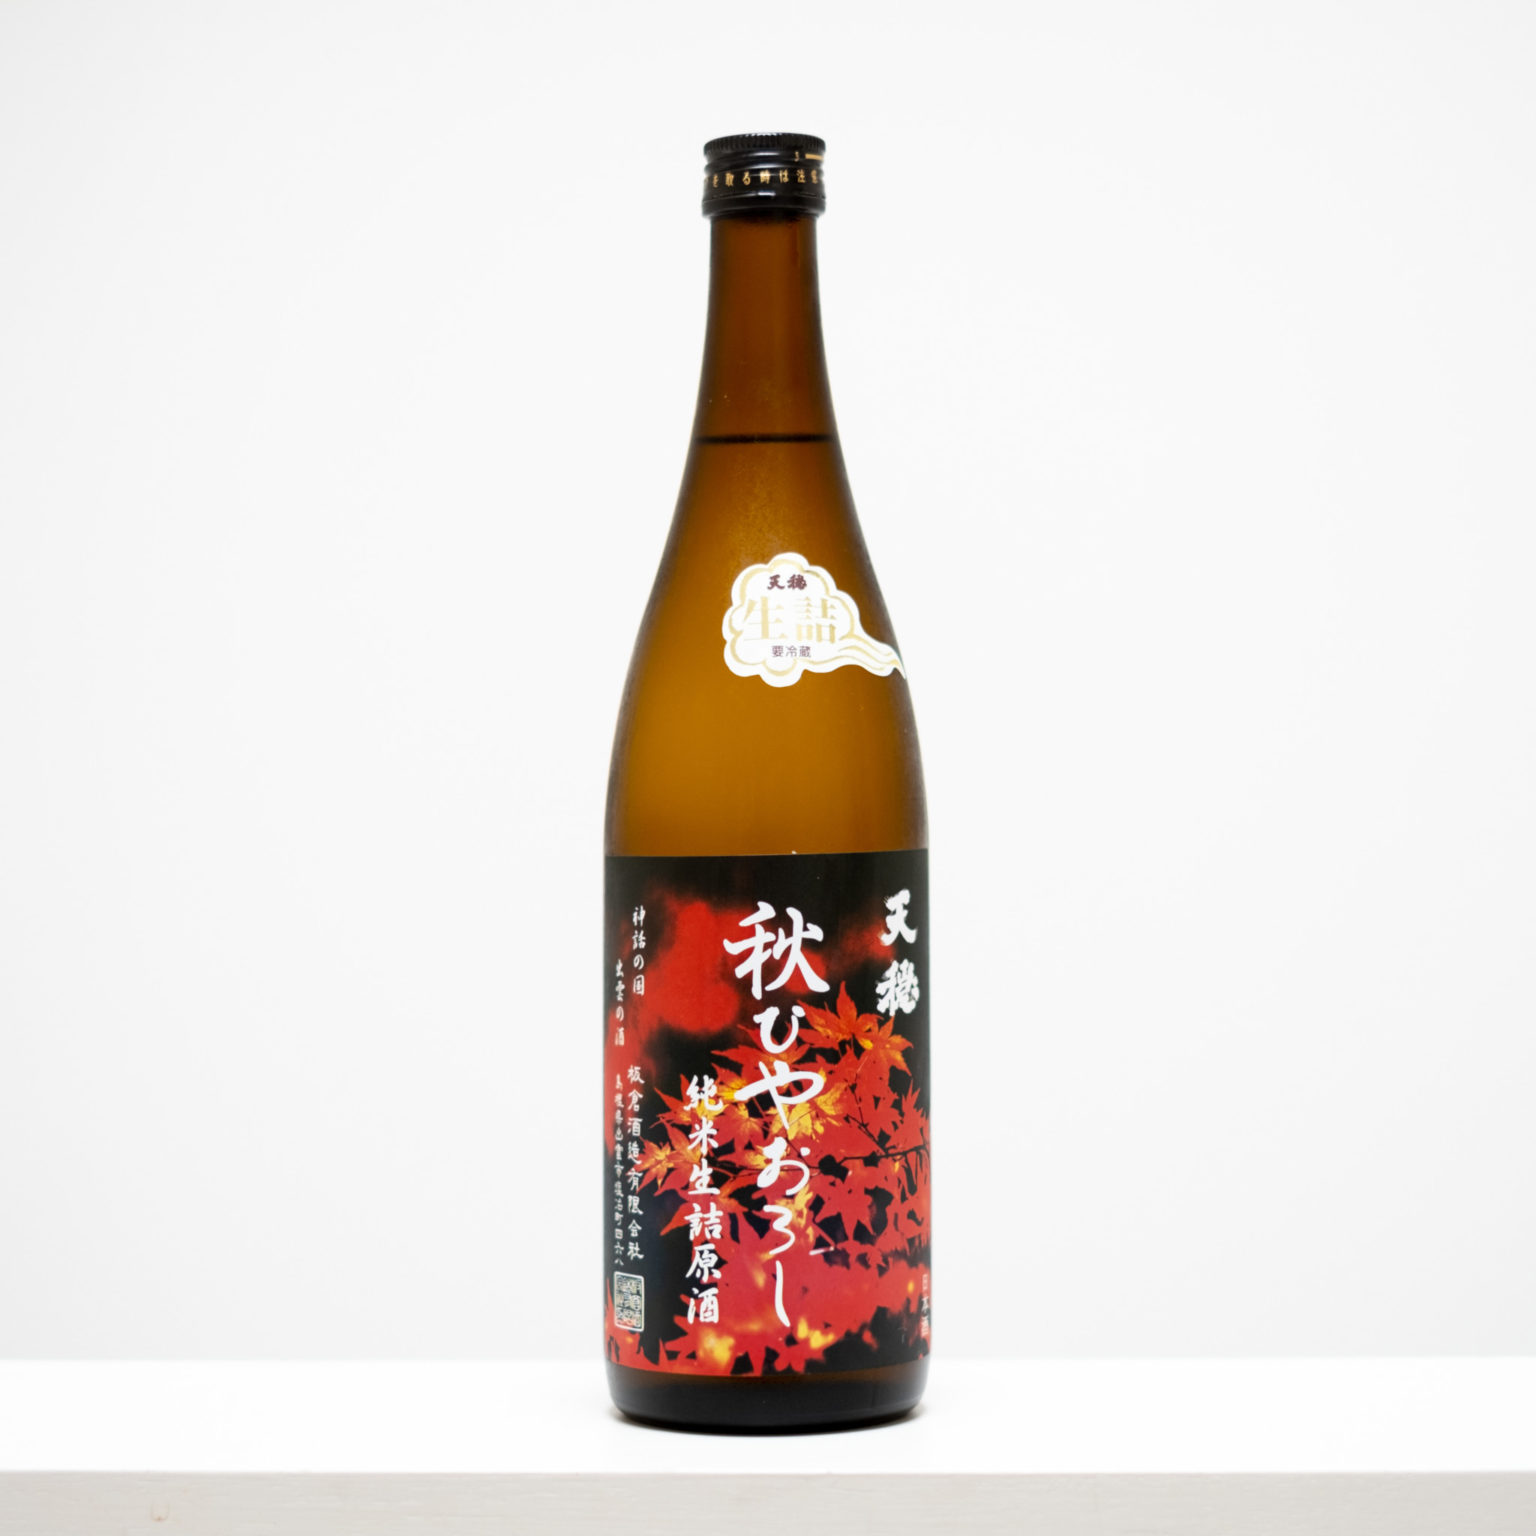 島根県出雲市にある板倉酒造の代表銘柄「天穏」。神様への供物“御神酒（おみき）”を目指す。アルコール度数18度と高めながら、すっきりとした飲み口。